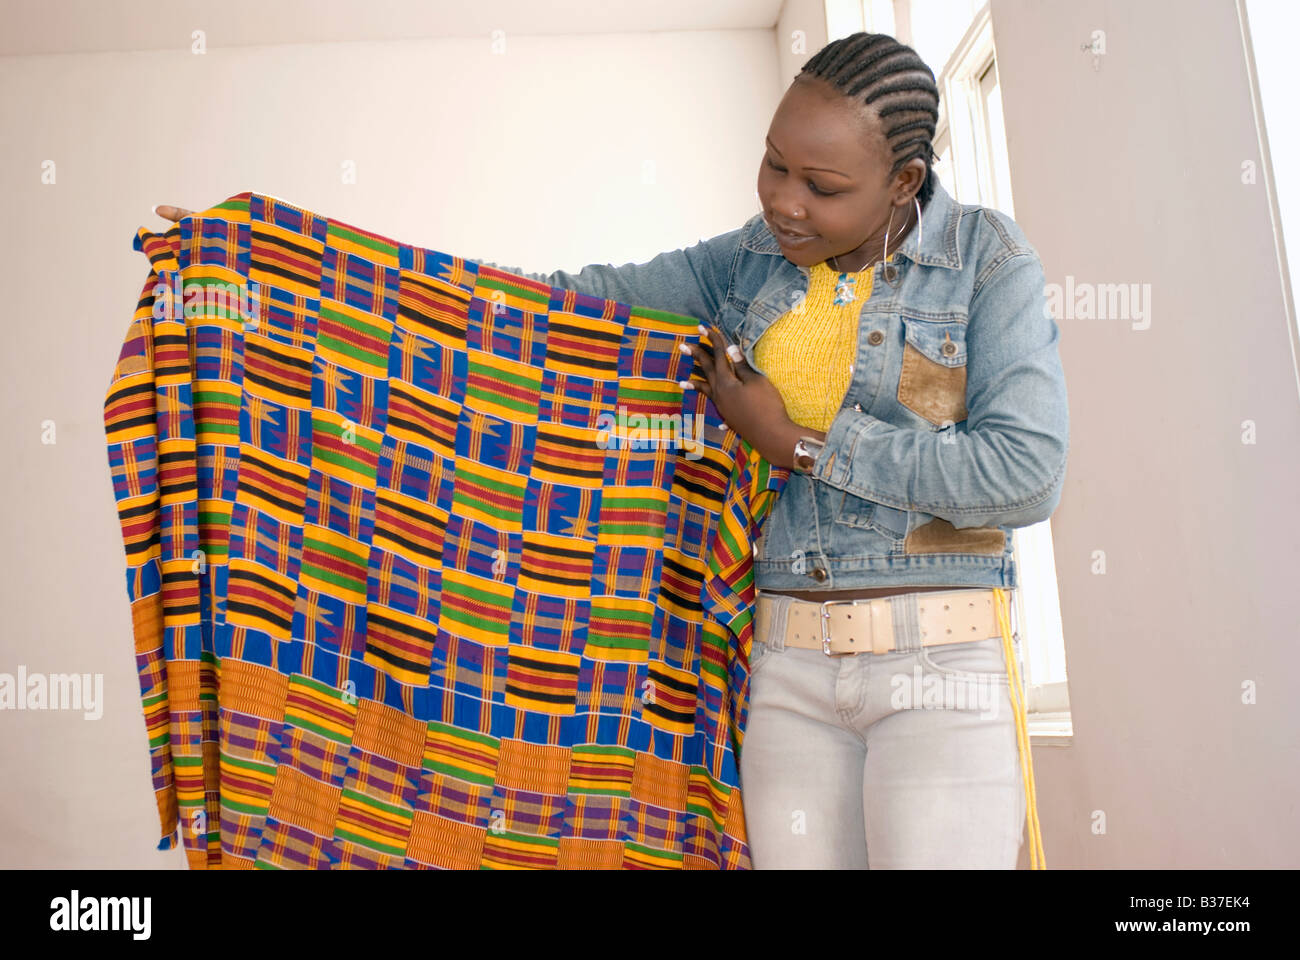 Jeune fille africaine avec tissu de kente ghana Banque D'Images